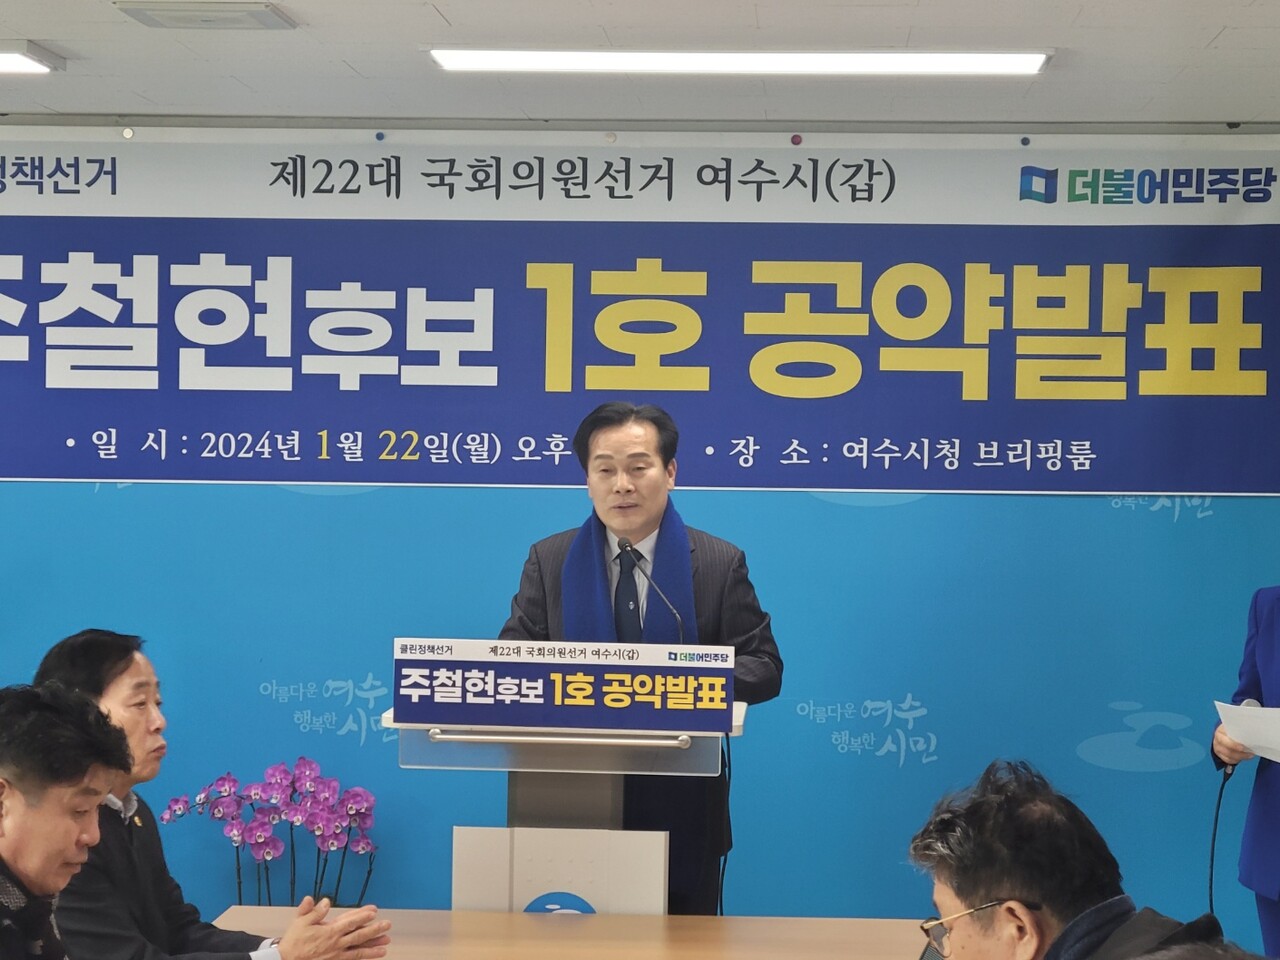 ▲주철현 국회의원은 22일 오후 여수시청 브리핑실에서 기자회견을 갖고 있다.